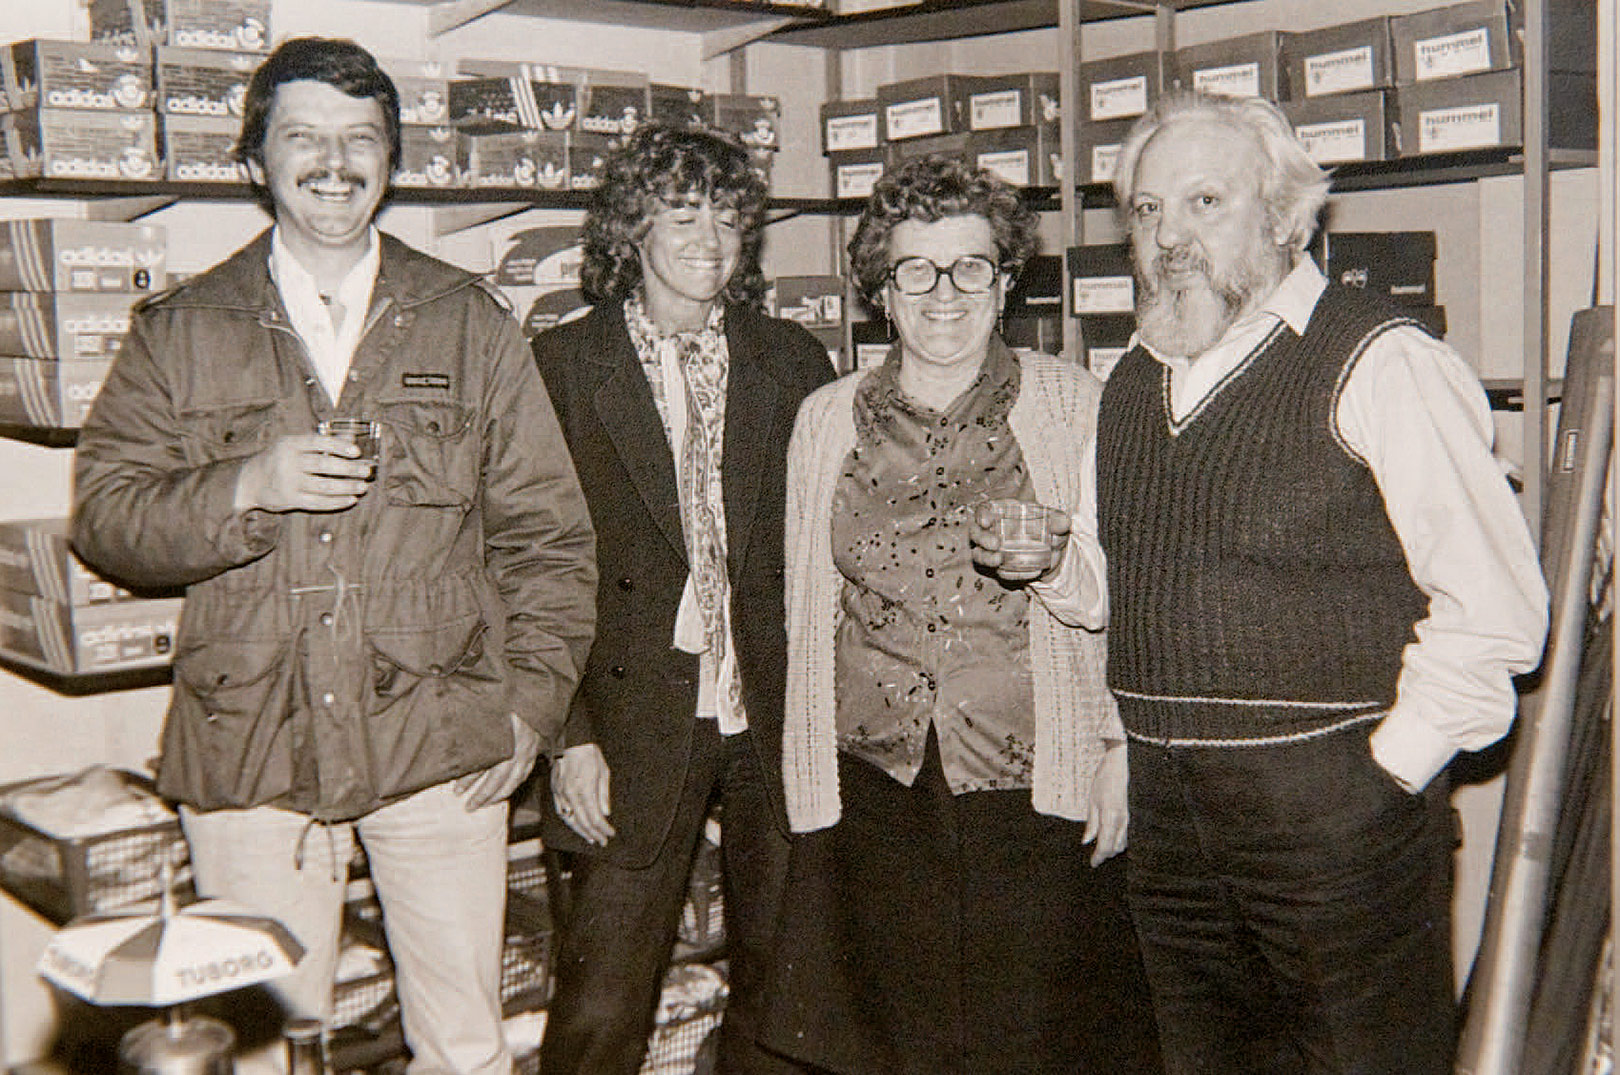 I 1983 overtog en ungdommeligAllan Riboe og fru Inge Hvidovre Sport efter Børge Post, som havde haft butikken i ca. 20 år. Dette blev fejret med et glas koldt fadøl i butikken, sammen med Børge og hans kone.